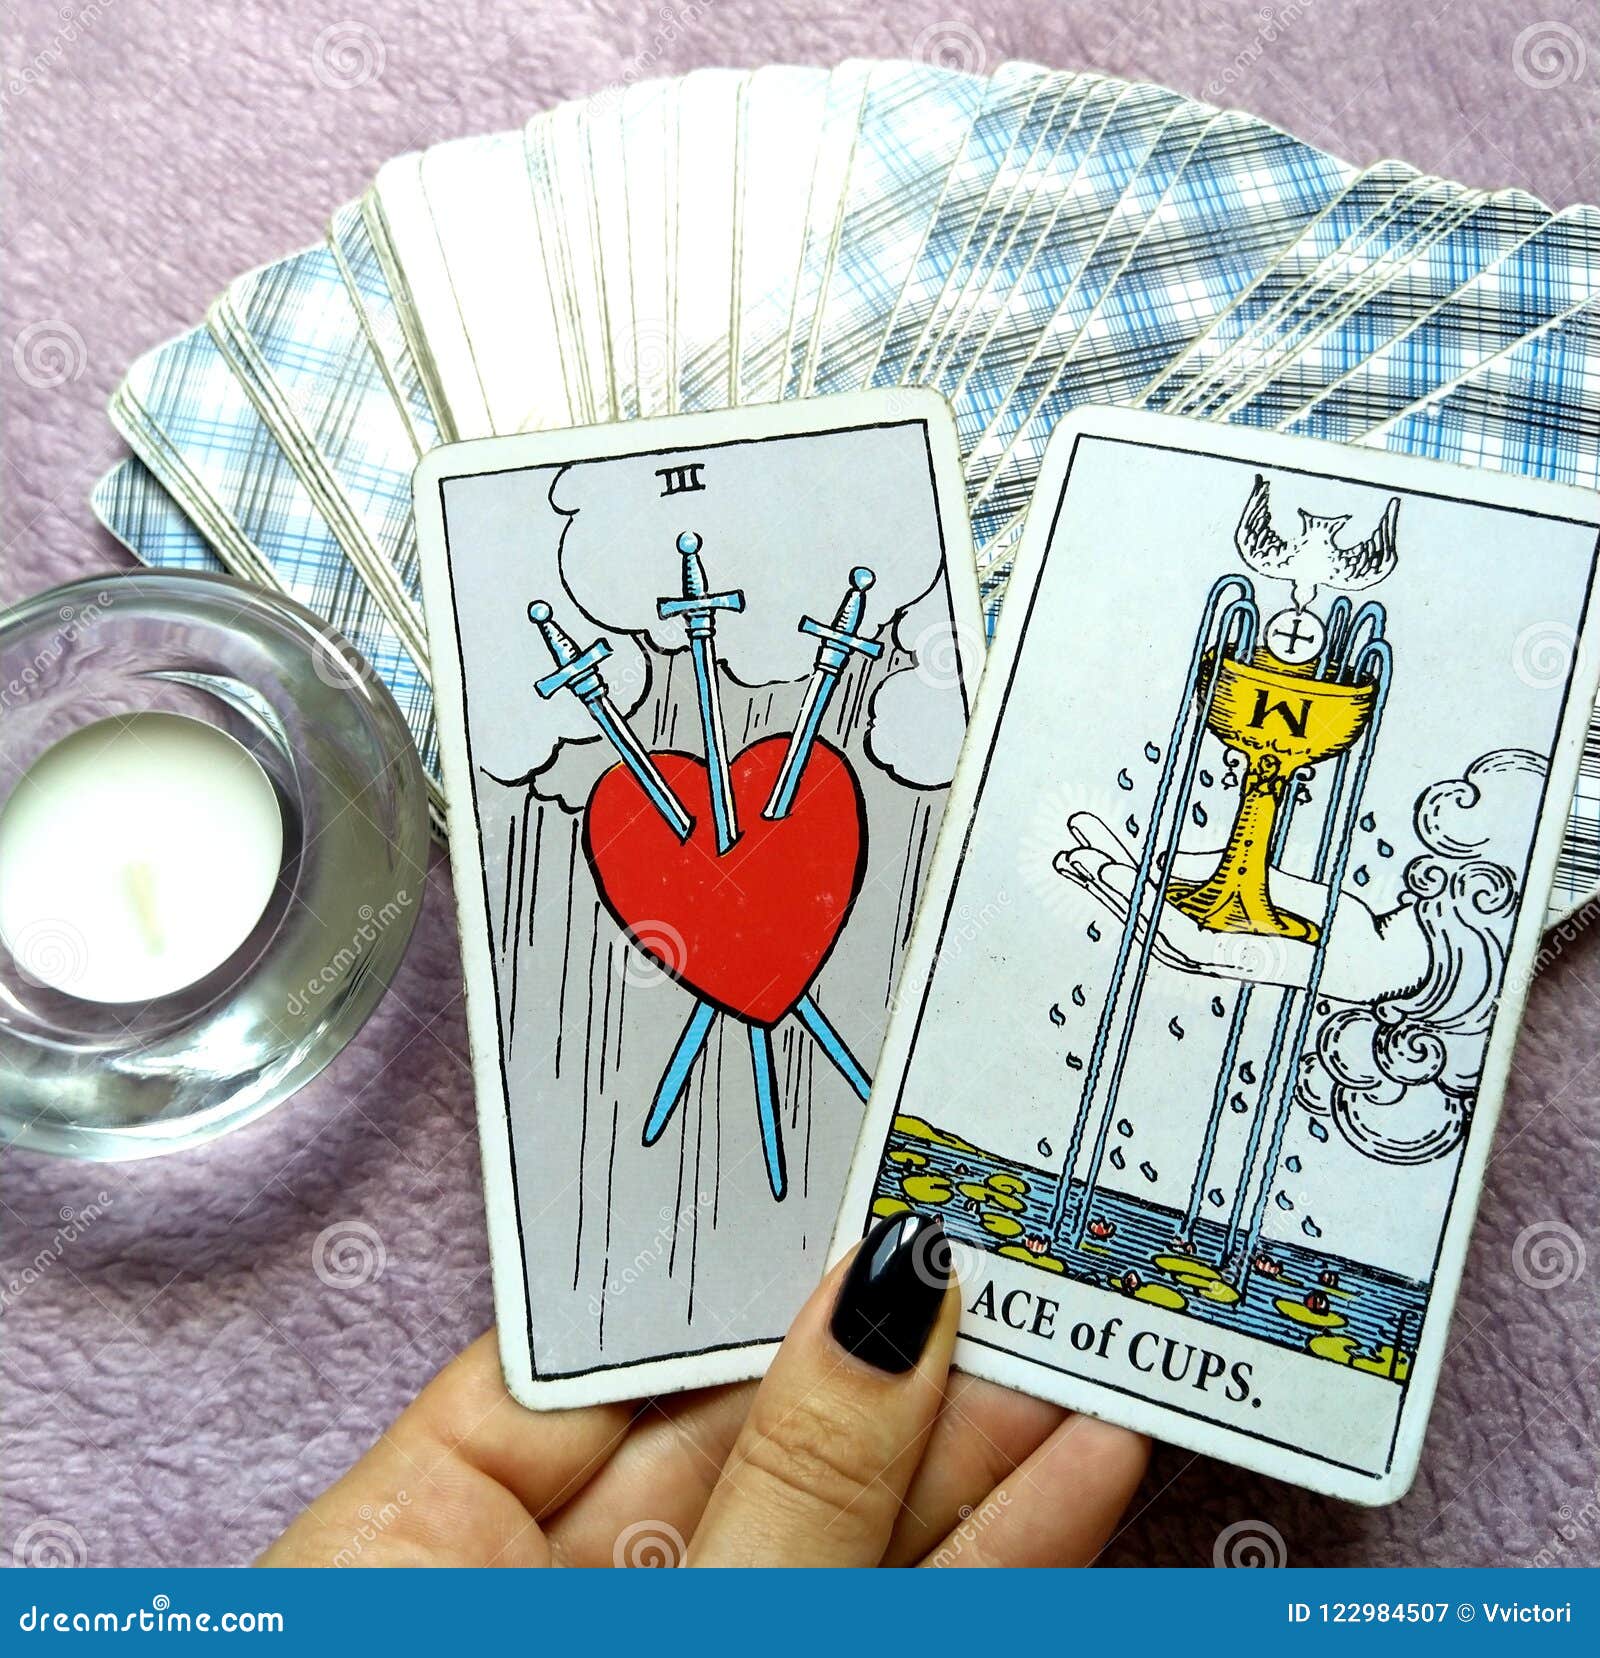 tarot cards divination purposes magic occult soul guidance tarot cards divination occult magic 122984507